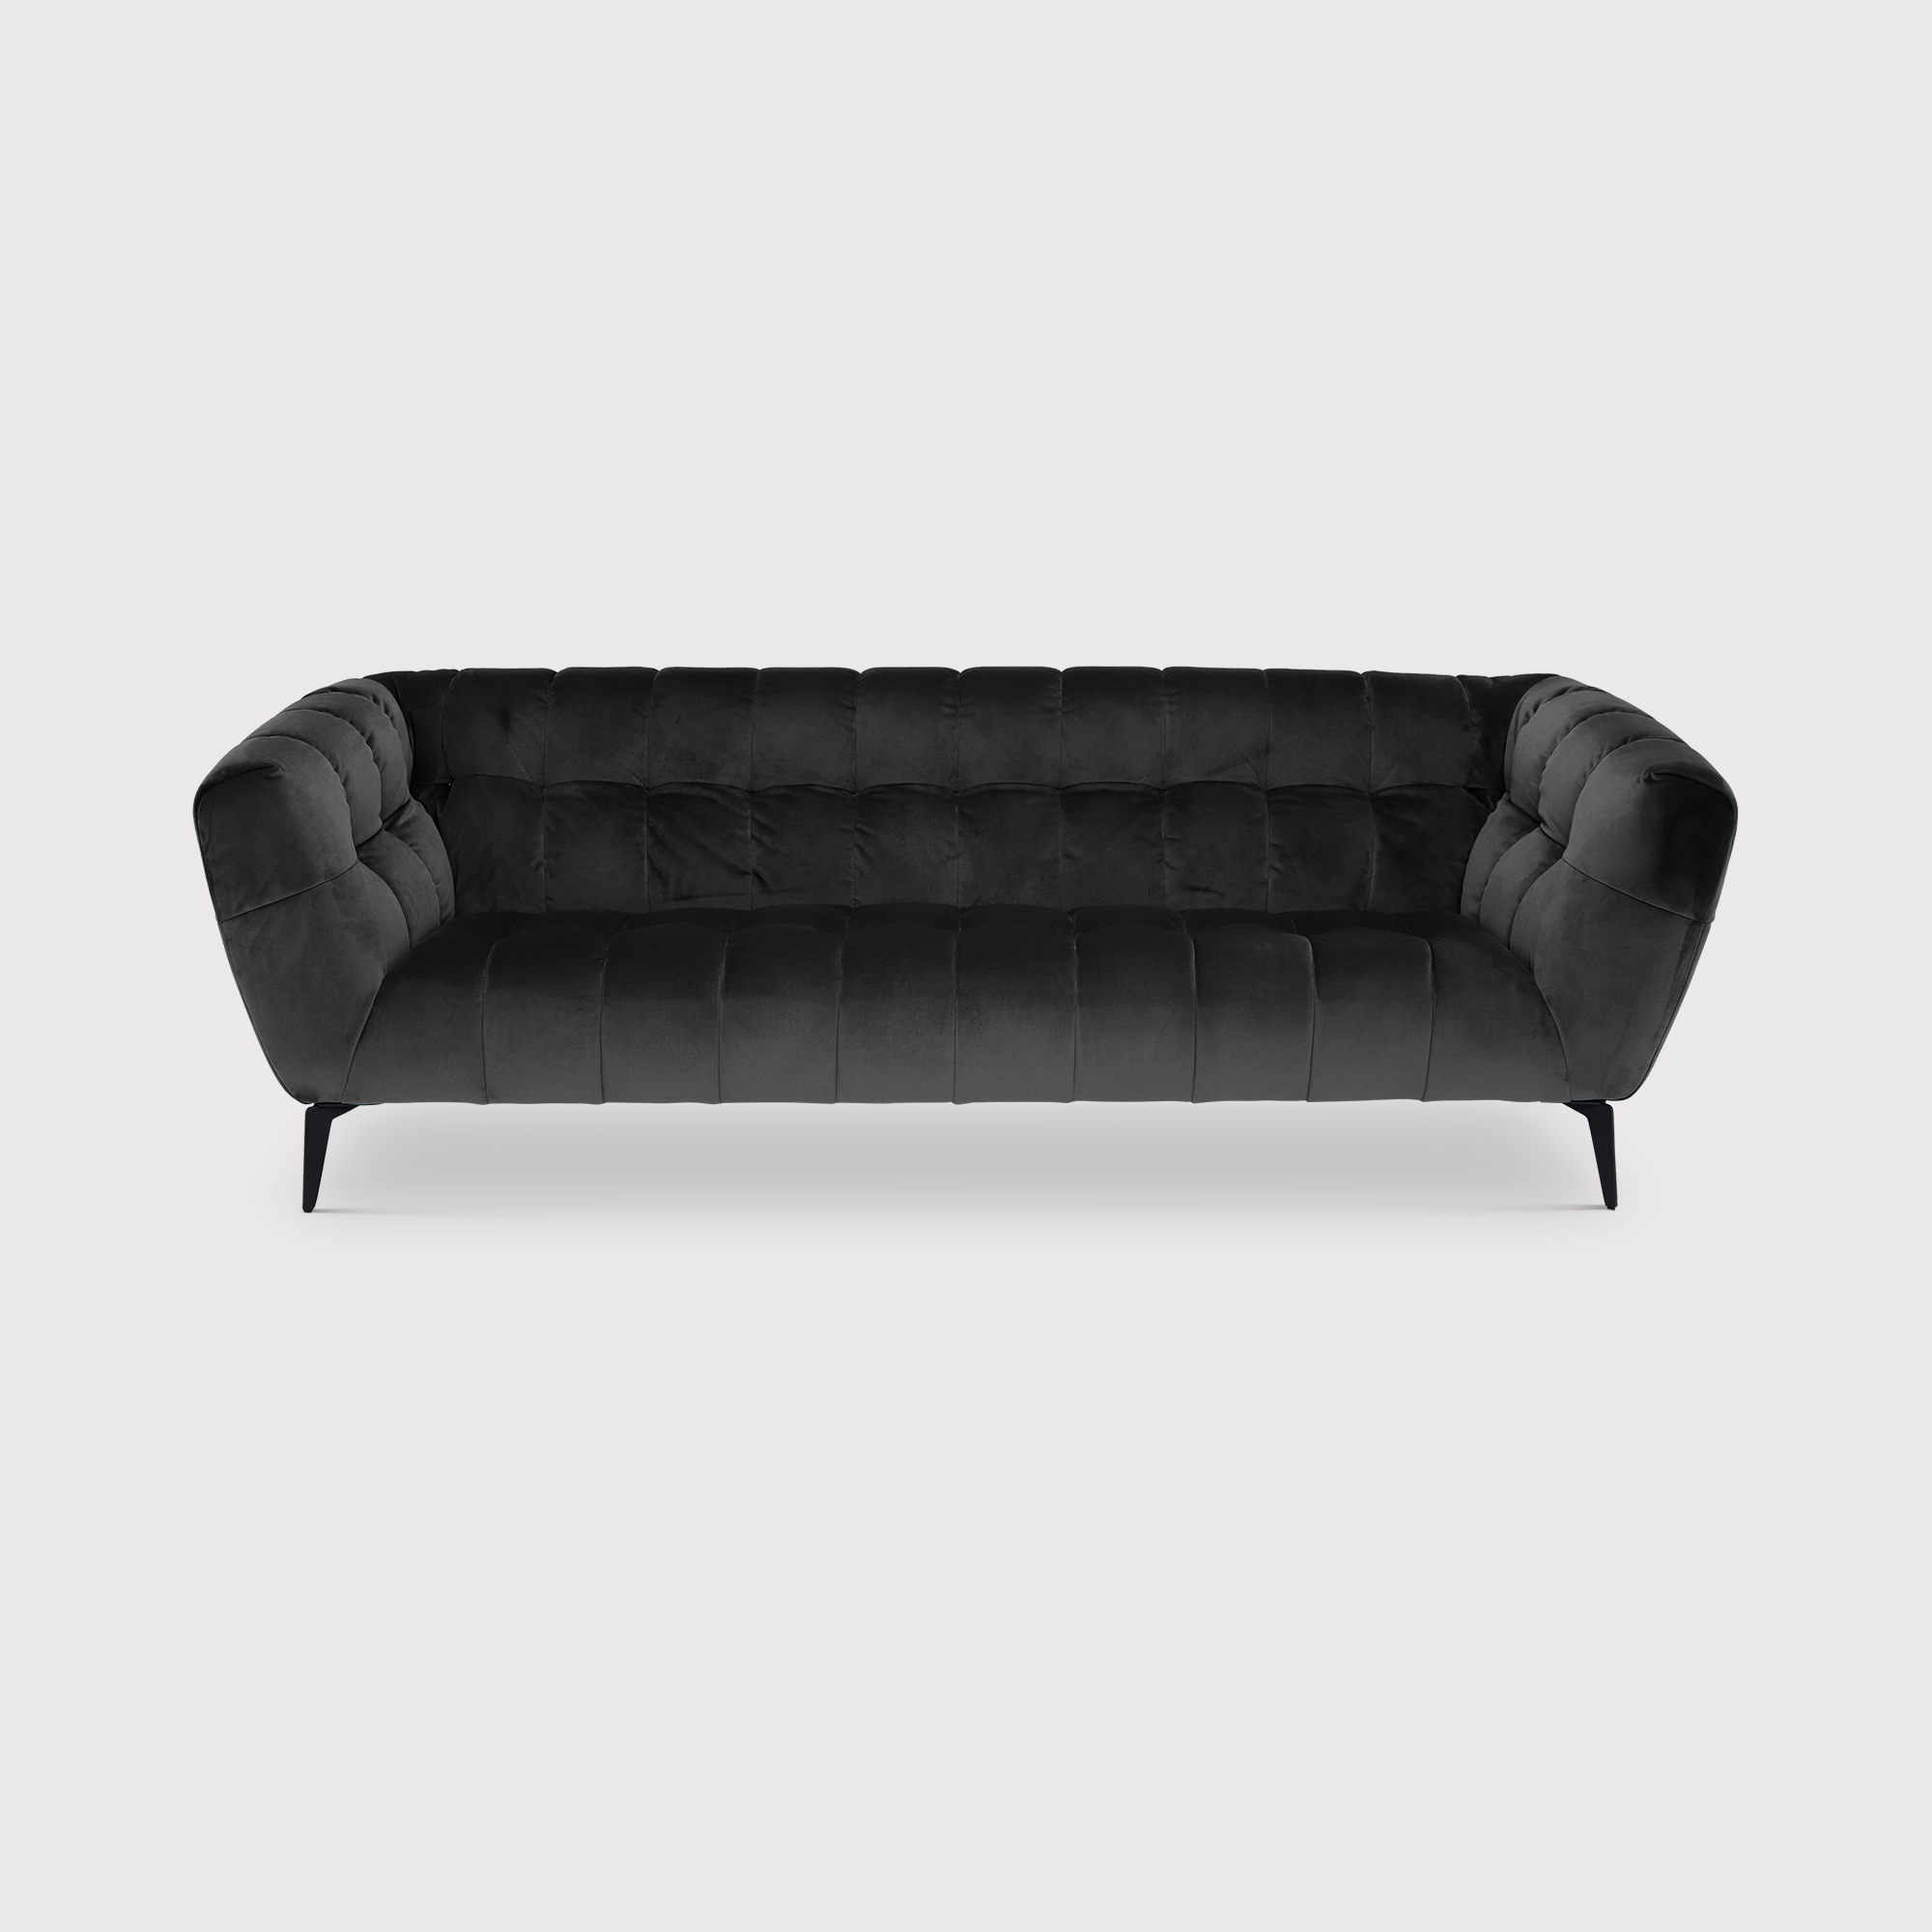 Azalea 3 Seater Sofa, Black Fabric | Barker & Stonehouse